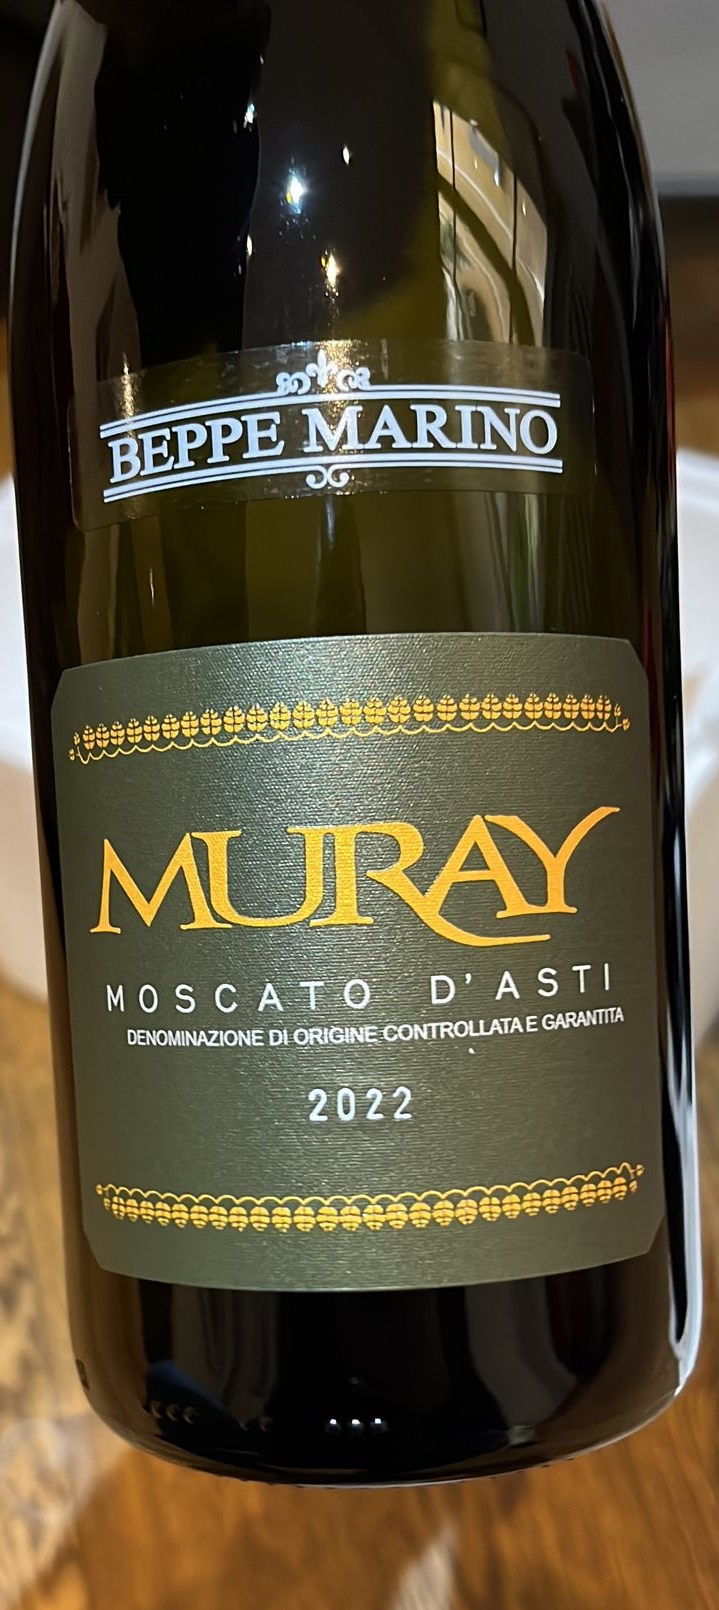 Muray Moscato D’Asti DOCG 2022, articolo: Beppe Marino una realtà piemontese dal 1972 vini di qualità